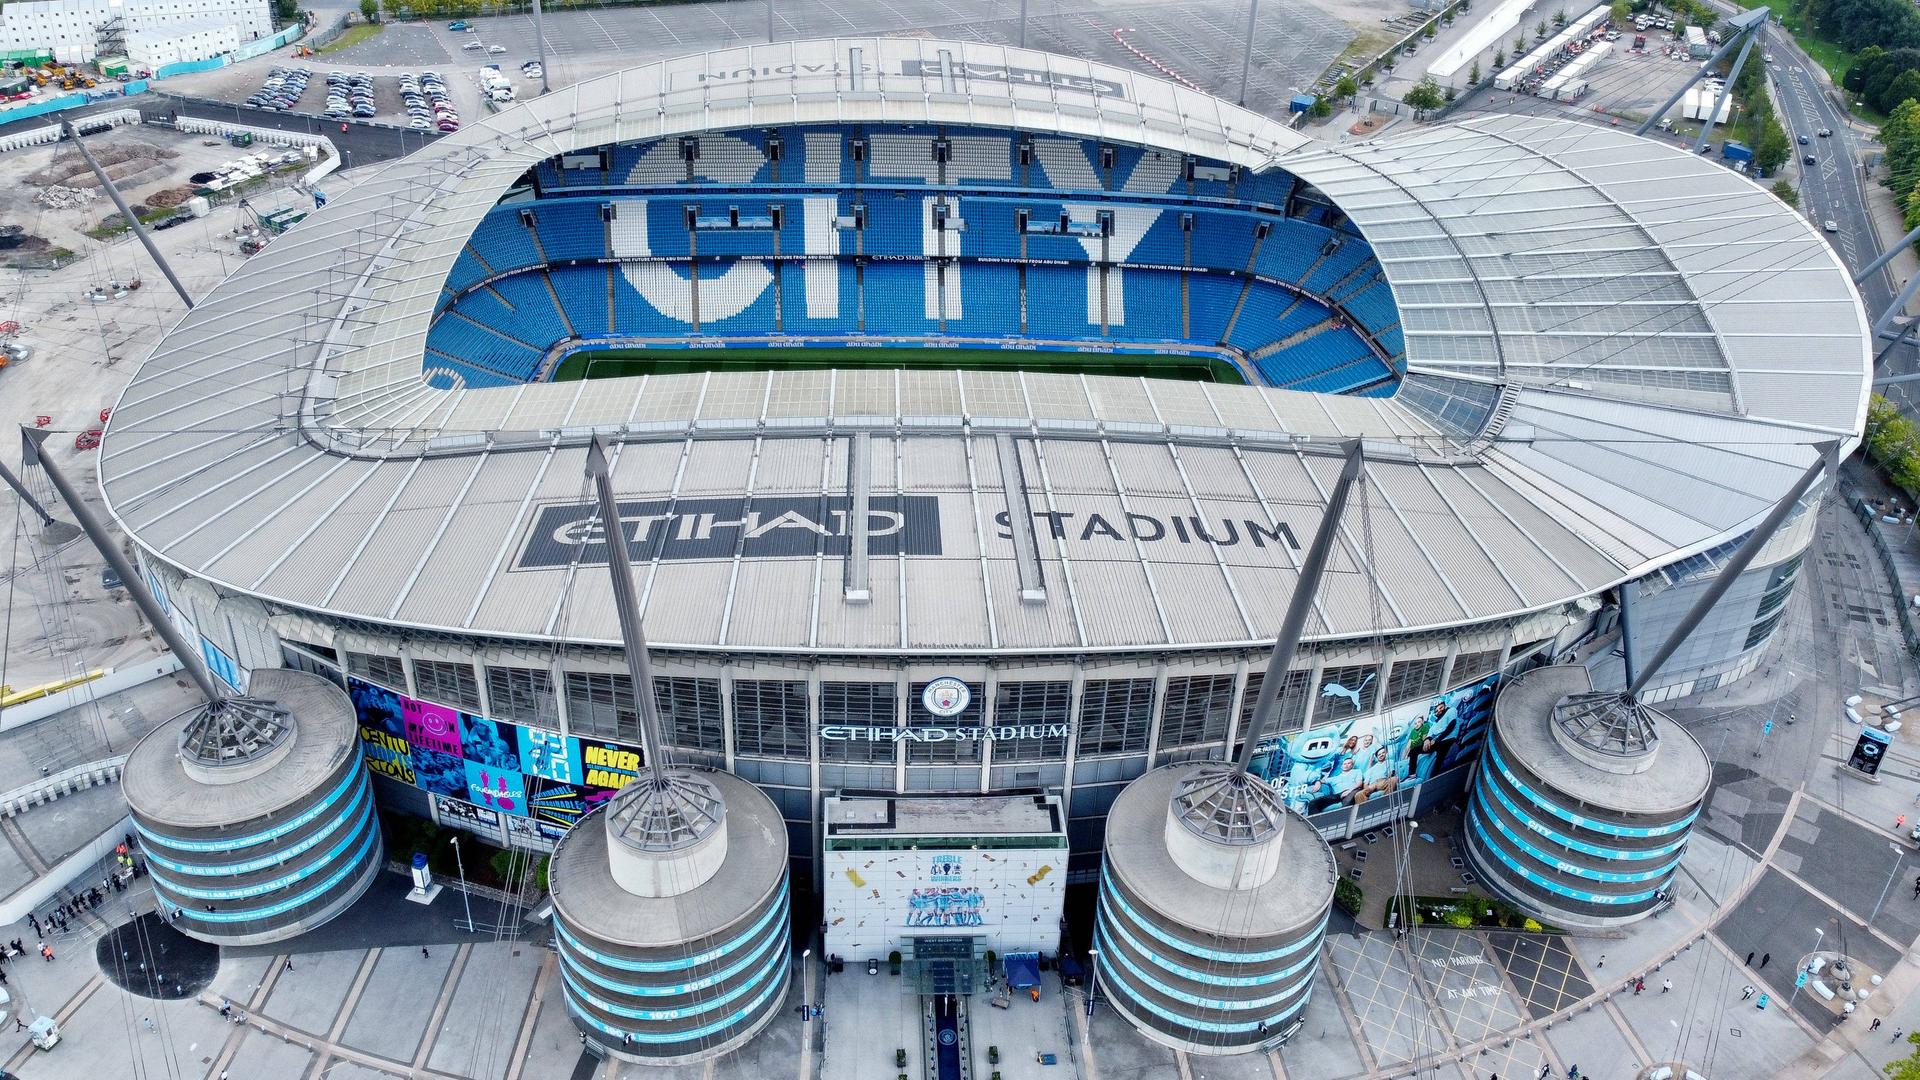 Blick in das Stadion von Manchester City